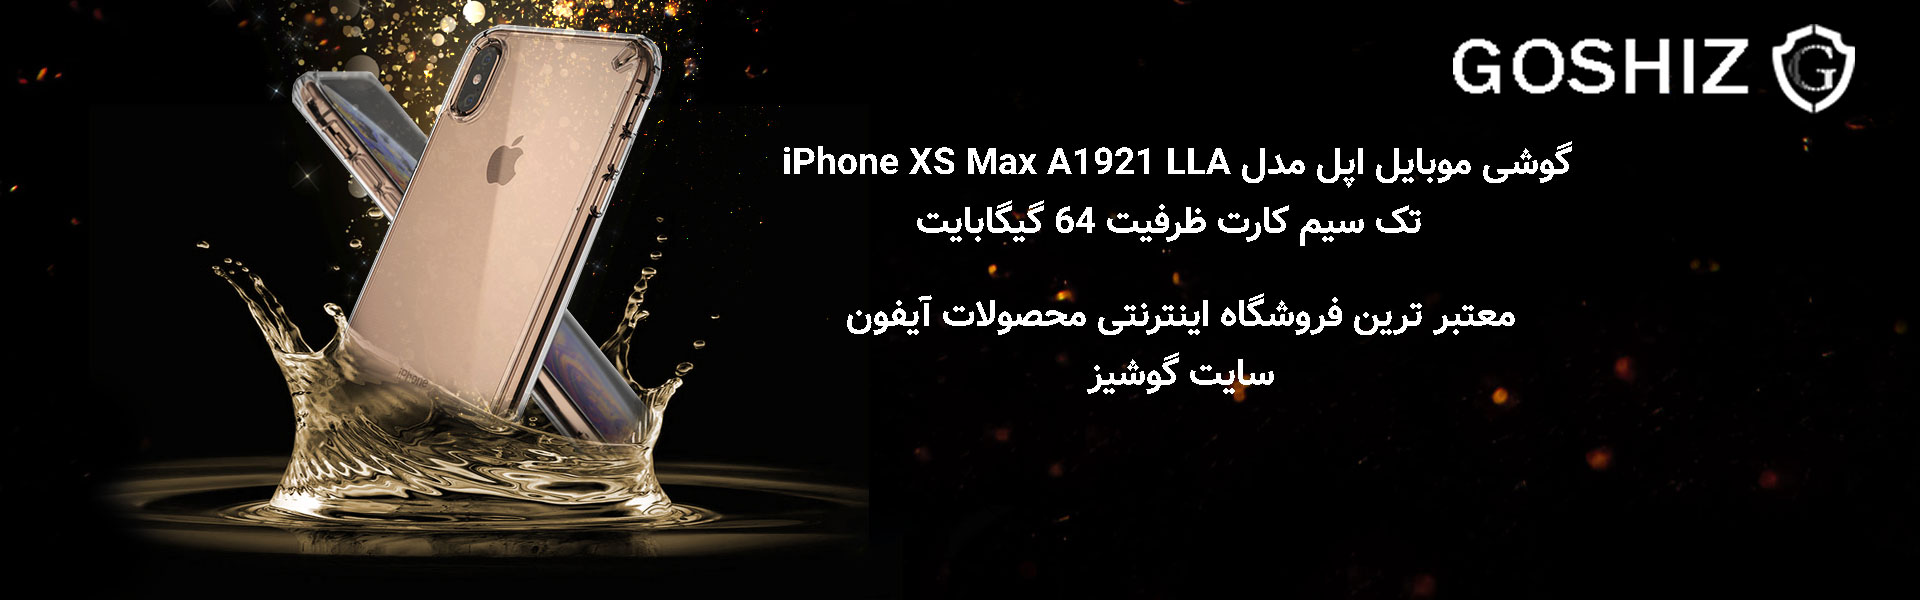 گوشی مدل iPhone XS Max A1921 LLA